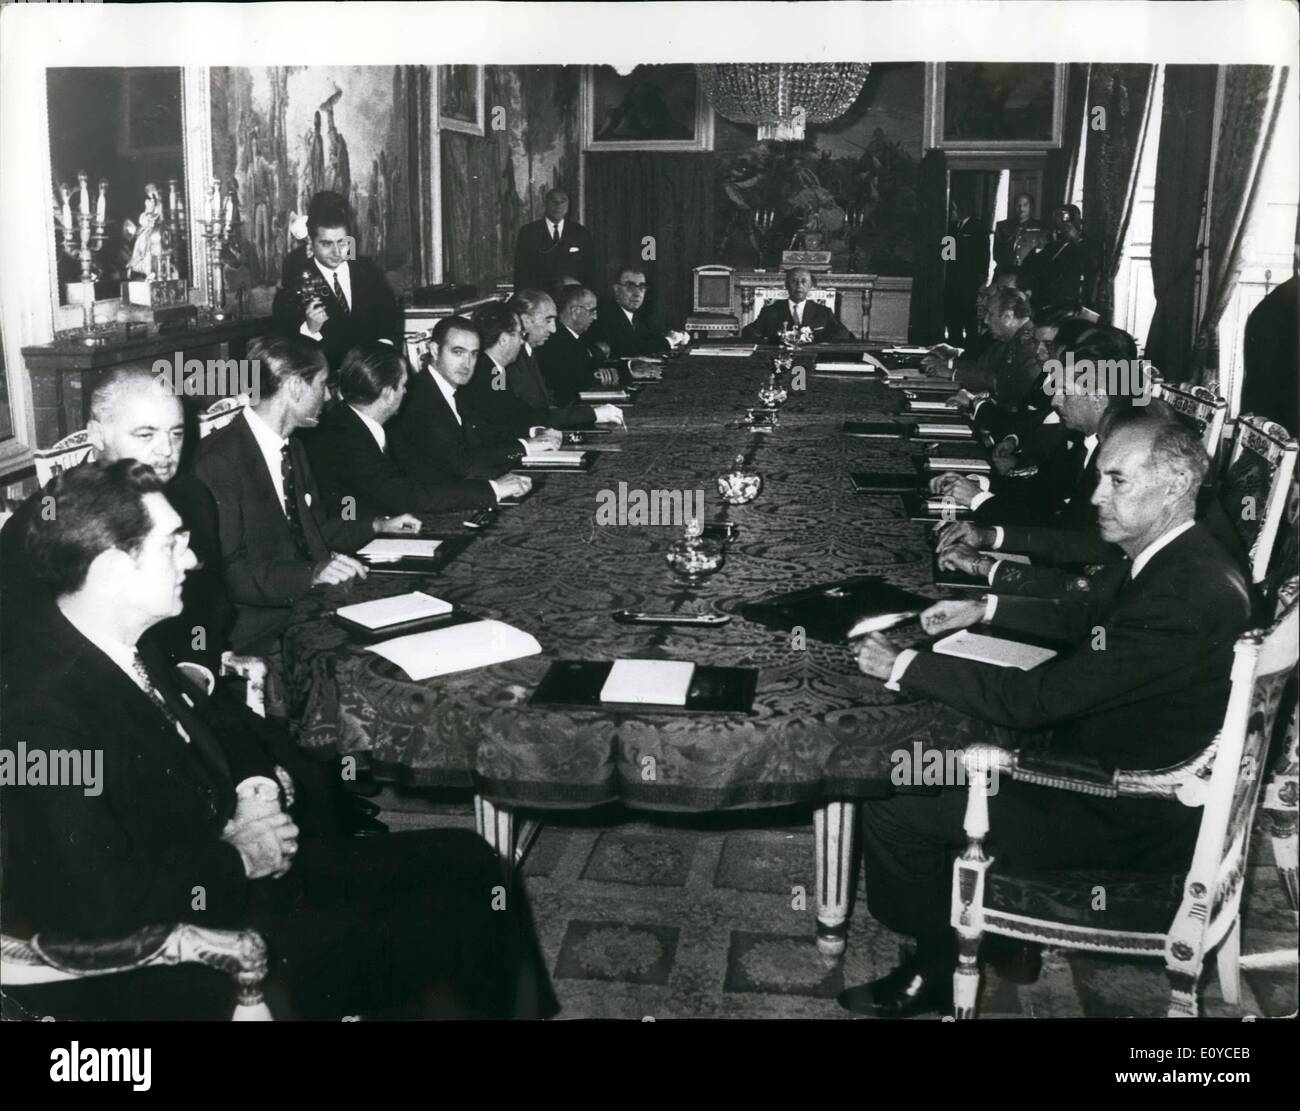 Novembre 11, 1969 - Le Général Franco rencontre son nouveau Cabinet du général Franco a rencontré son nouveau Cabinet au palais du Pardo, Madrid, le 31 octobre. C'était le premier Conseil des ministres officielle avec le nouveau Cabinet. Banque D'Images